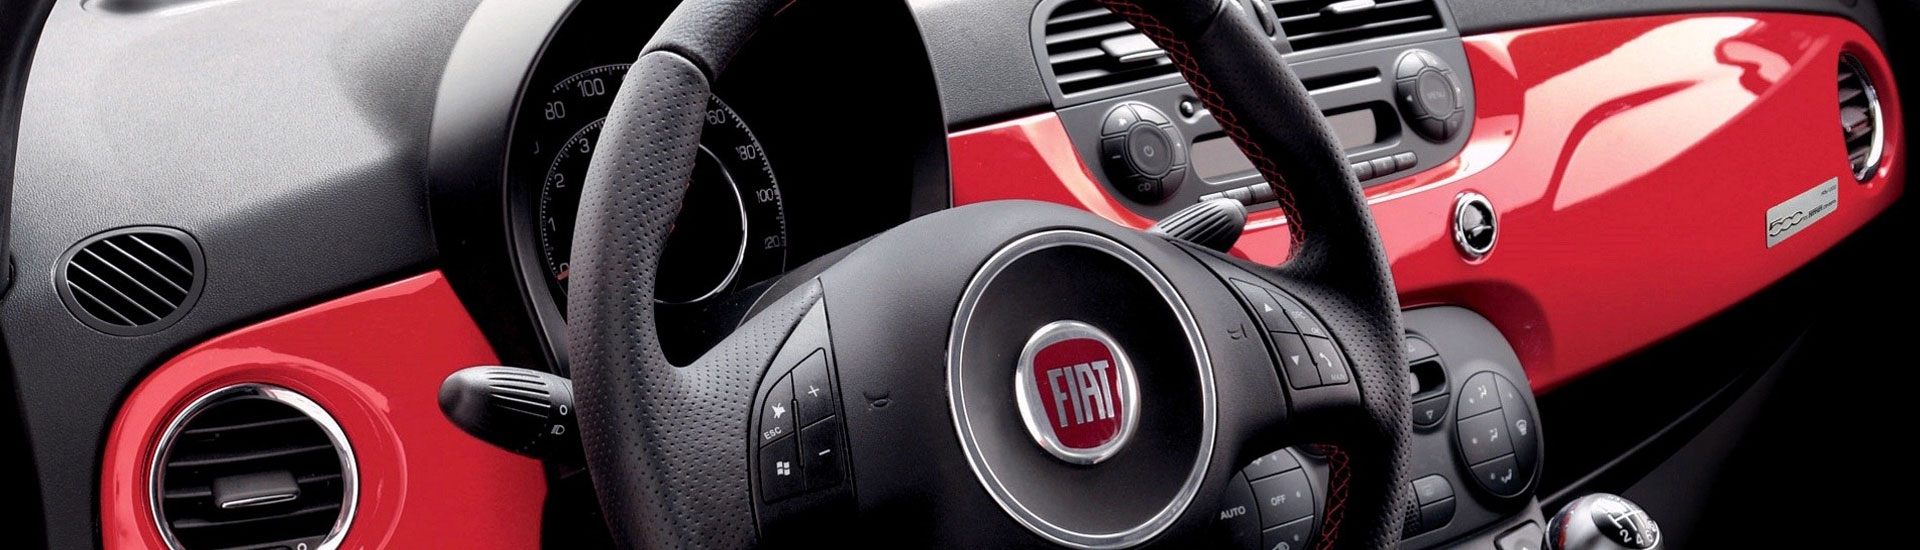 2019 Fiat 500e Custom Dash Kits